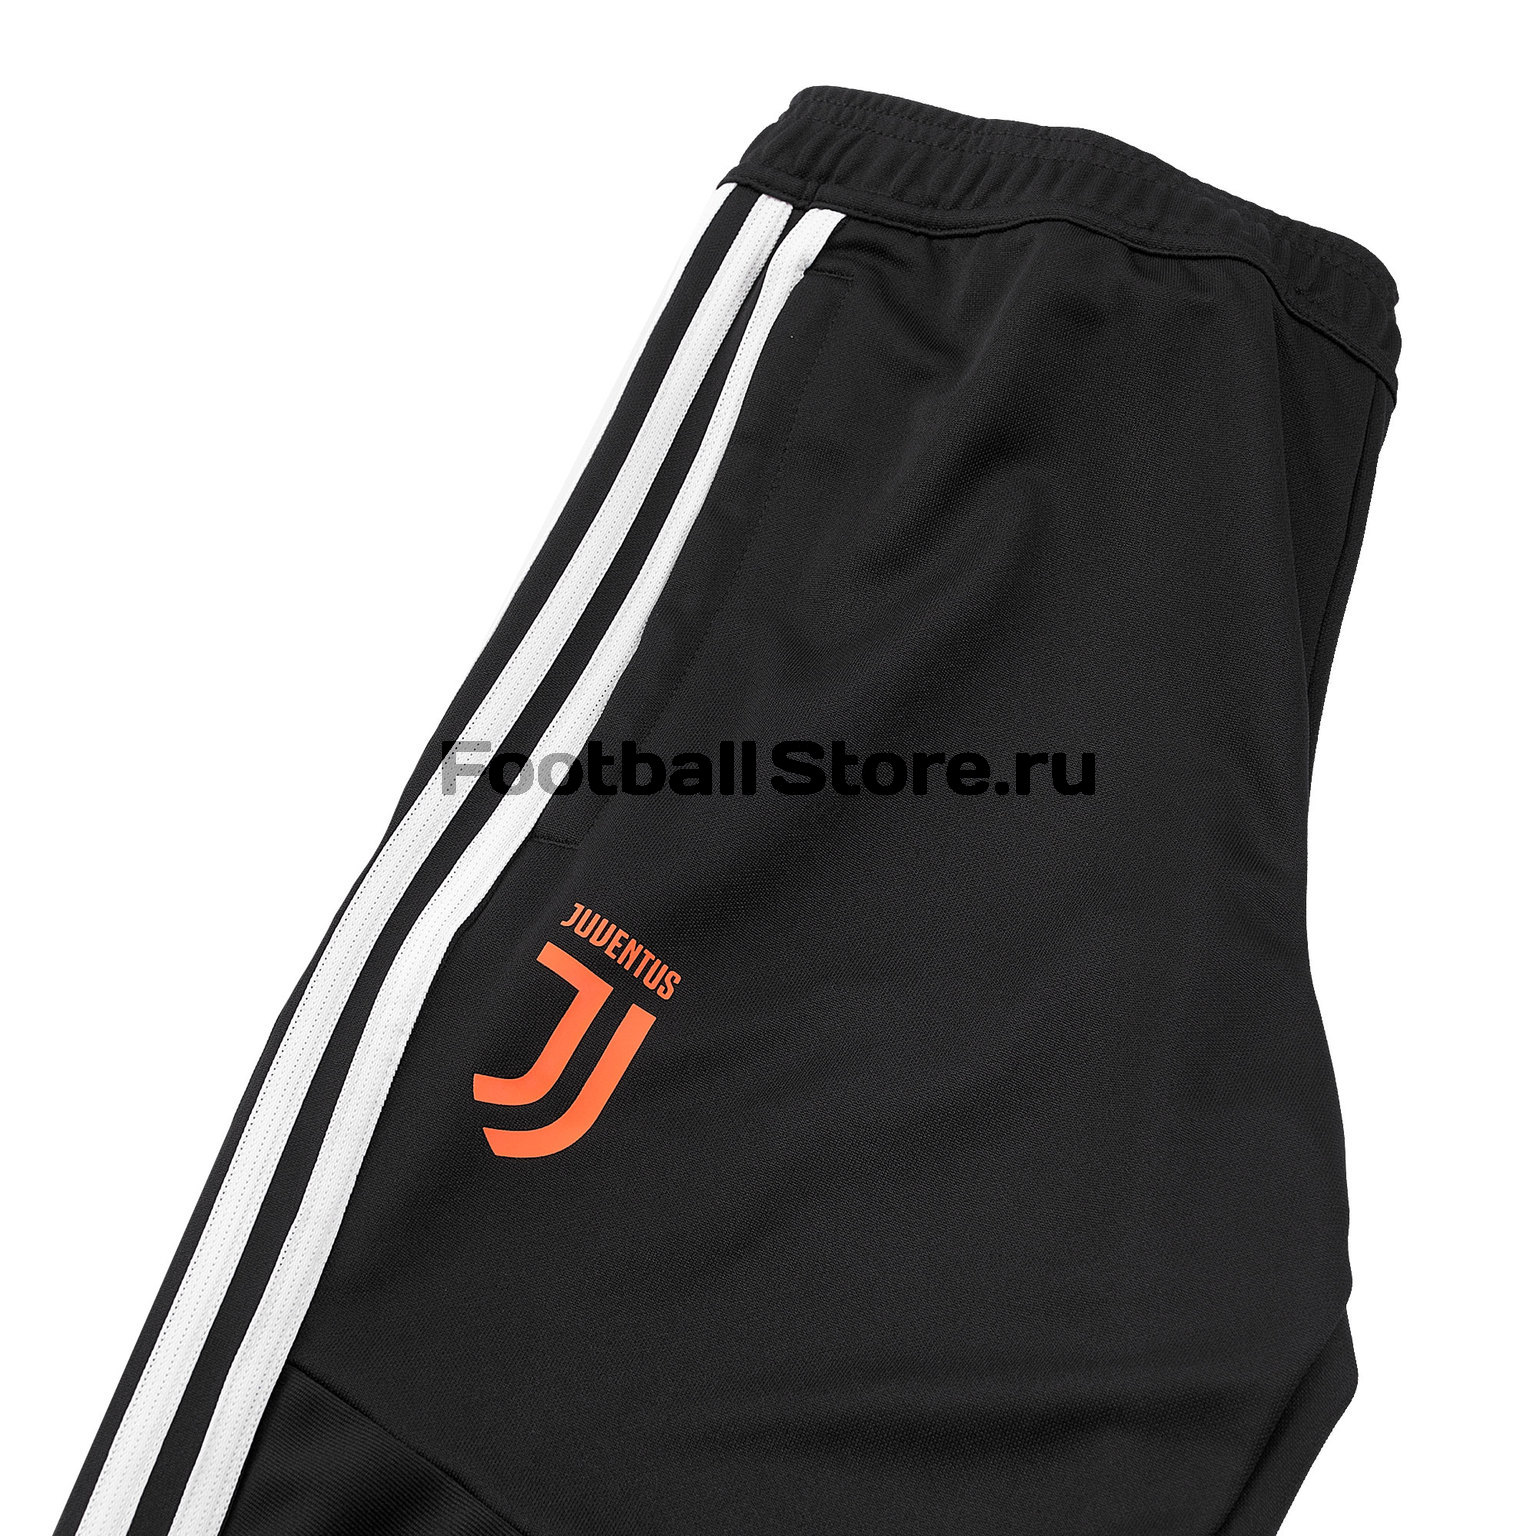 Брюки тренировочные Adidas Juventus 2019/20